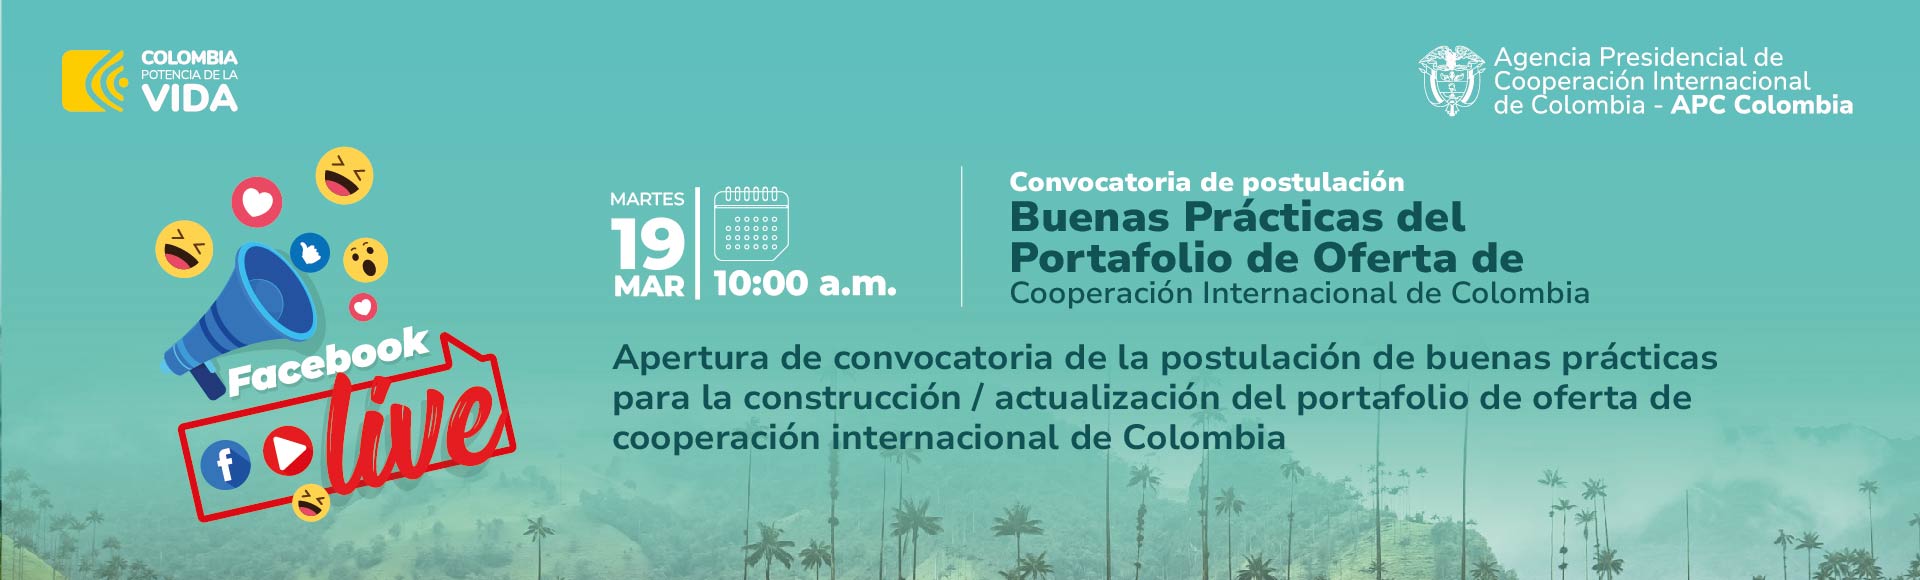 Facebook Live Convocatoria para presentar buenas prácticas para el Portafolio de Oferta de Cooperación Internacional de Colombia 19 de marzo a las diez de la mañana